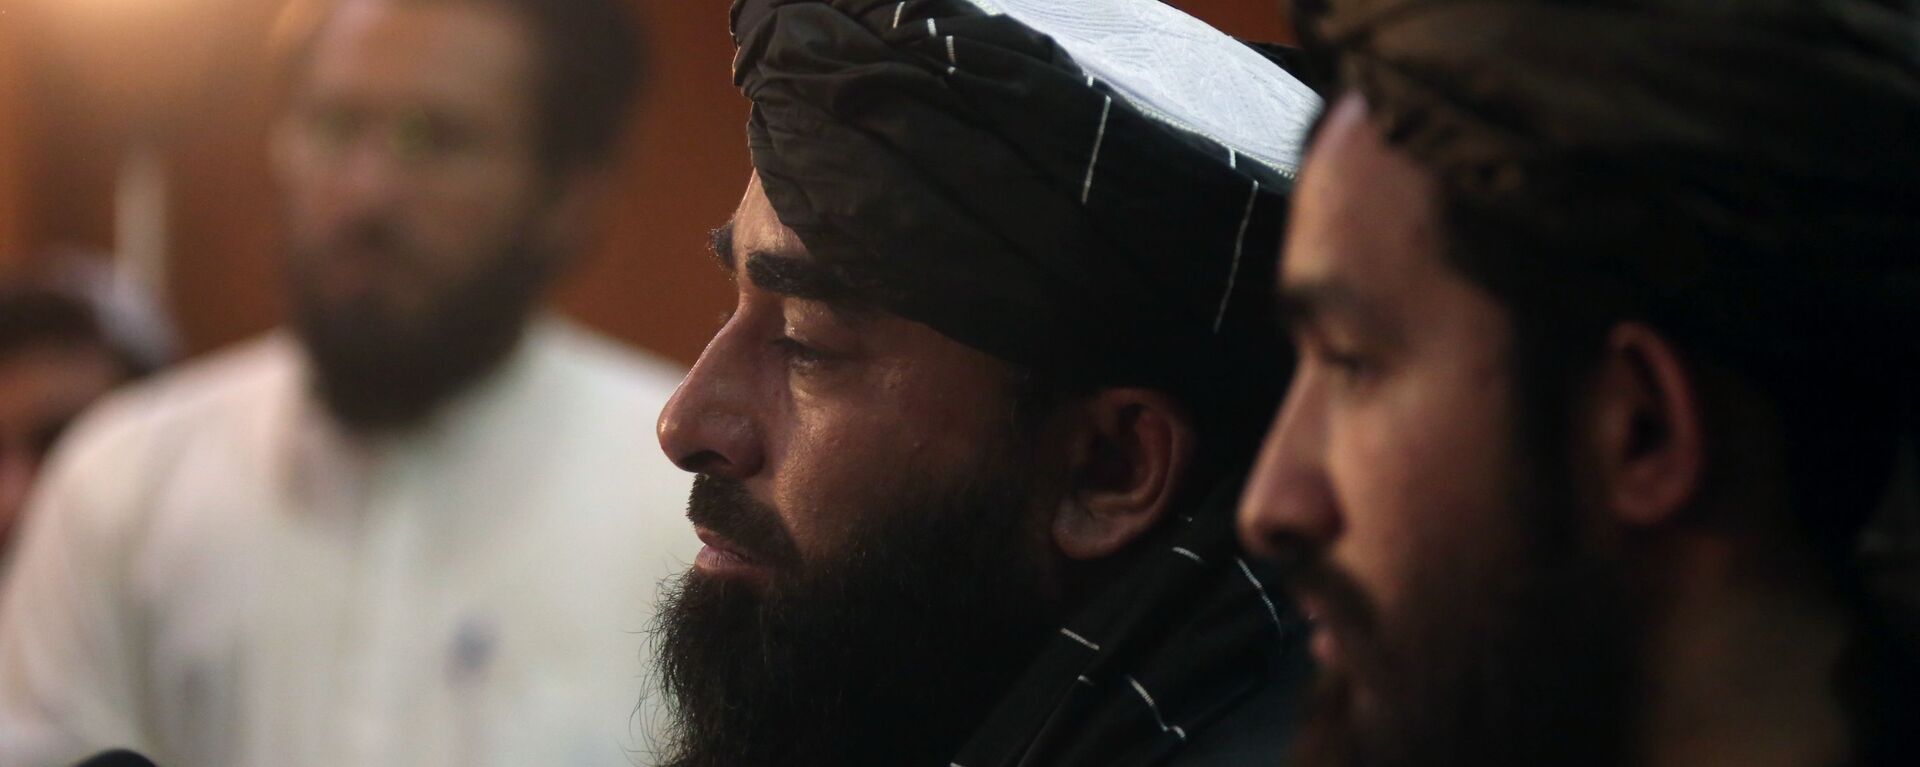 Представитель движения Талибан Забиулла Муджахид во время пресс-конференции в Кабуле (17 августа 2021). Афганистан - Sputnik Армения, 1920, 05.09.2021